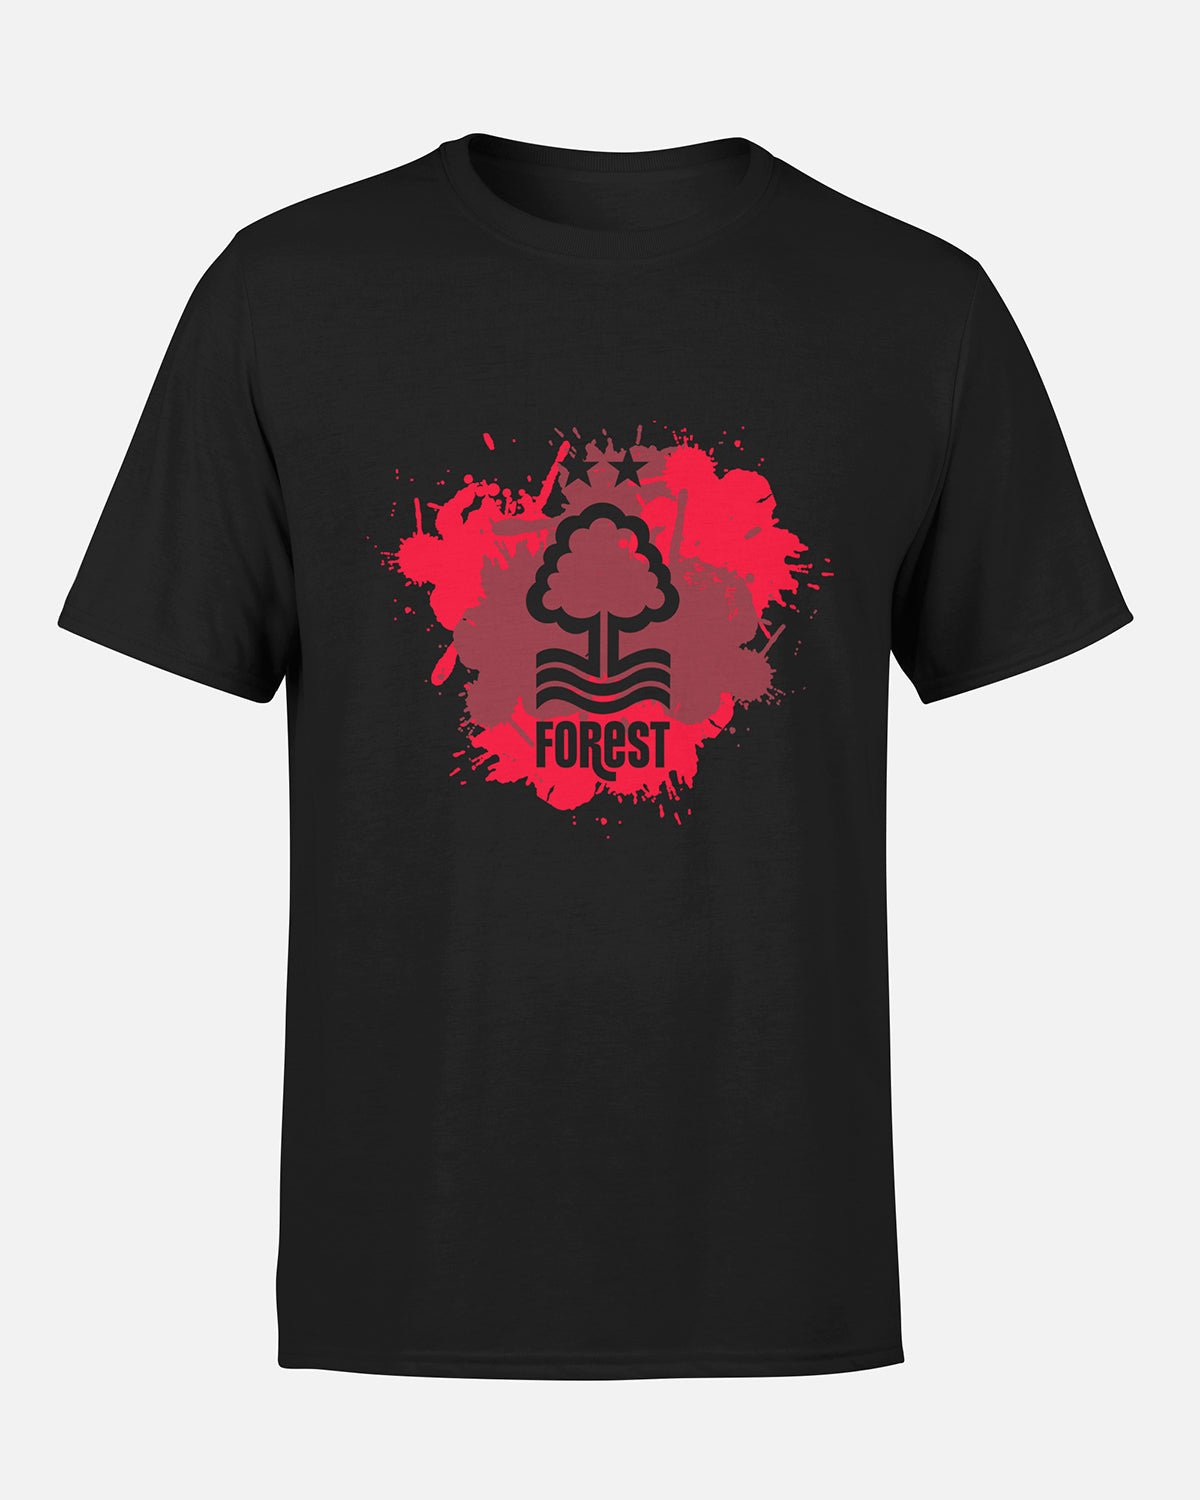 NFFC Adult Black Splatter Print T-Shirt - Nottingham Forest FC